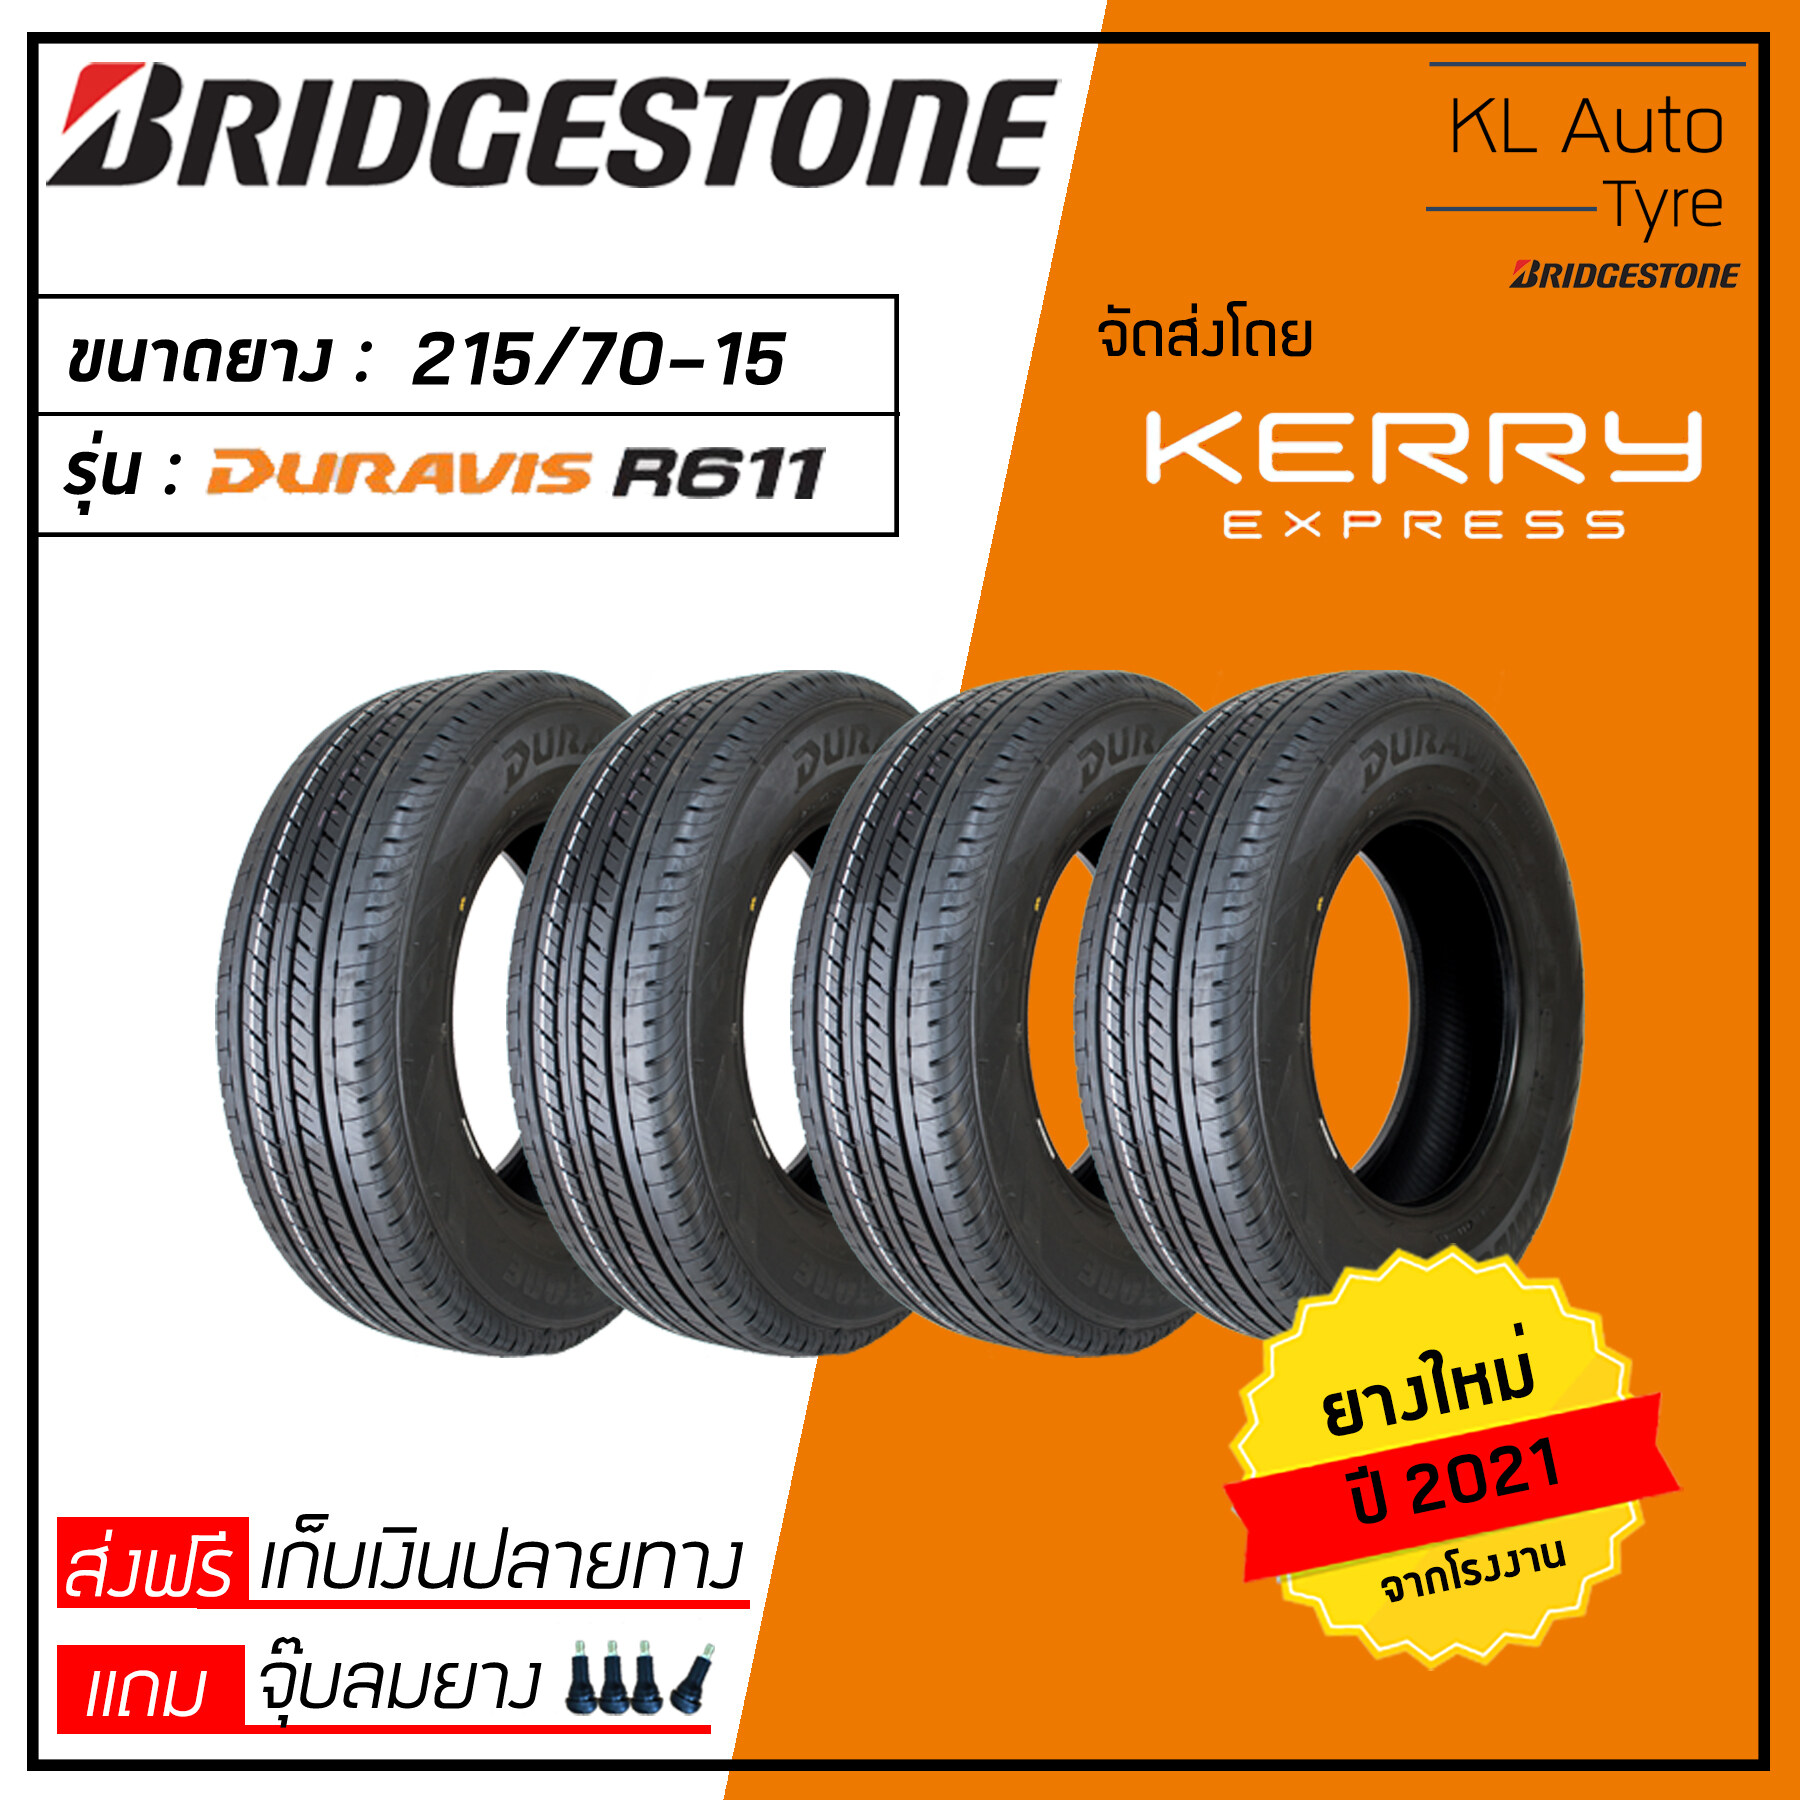 Bridgestone 215/70-15 R611 4 เส้น ปี 21 (ฟรี จุ๊บลมยาง 4 ตัว มูลค่า 200 บาท)